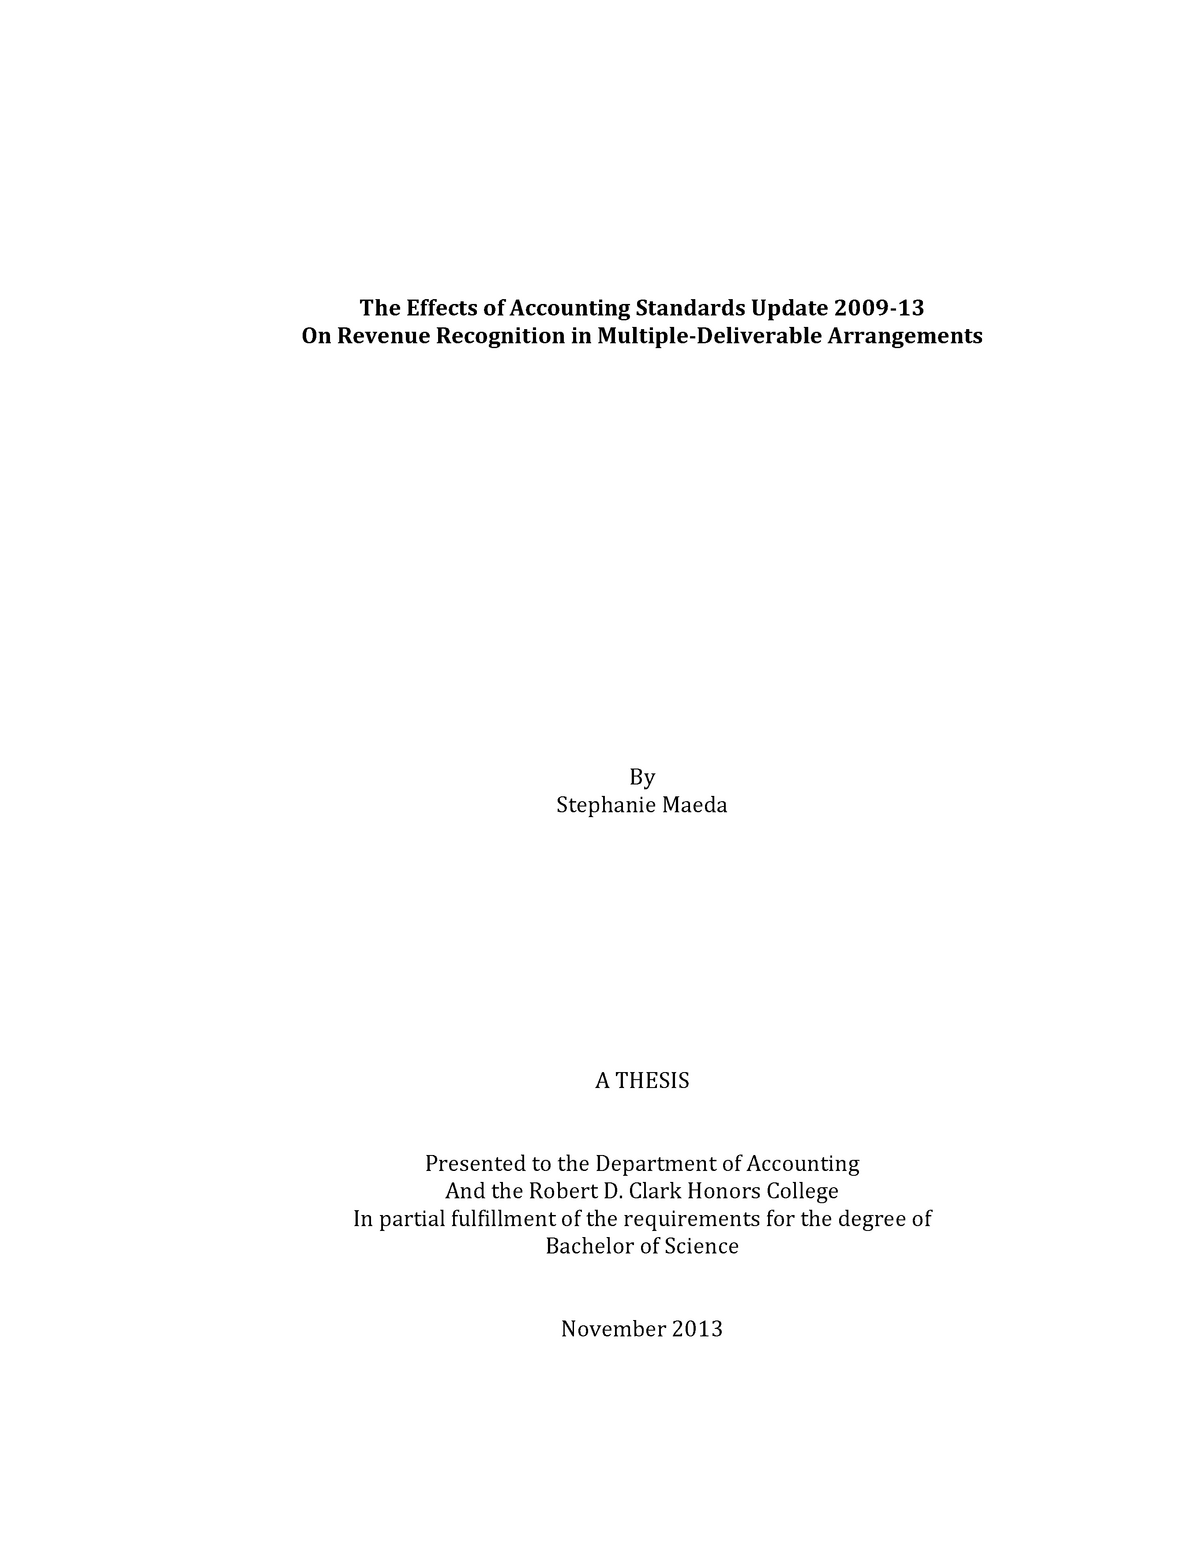 revenue management phd thesis